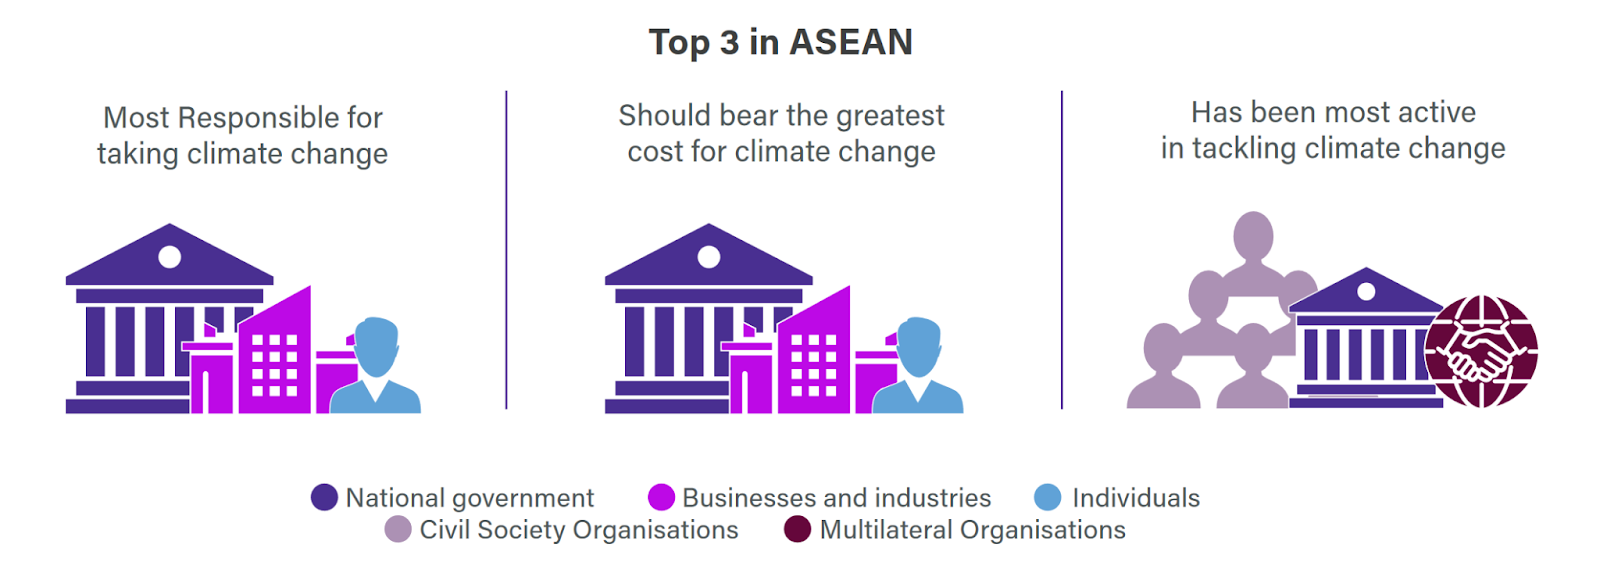 Top 3 in ASEAN